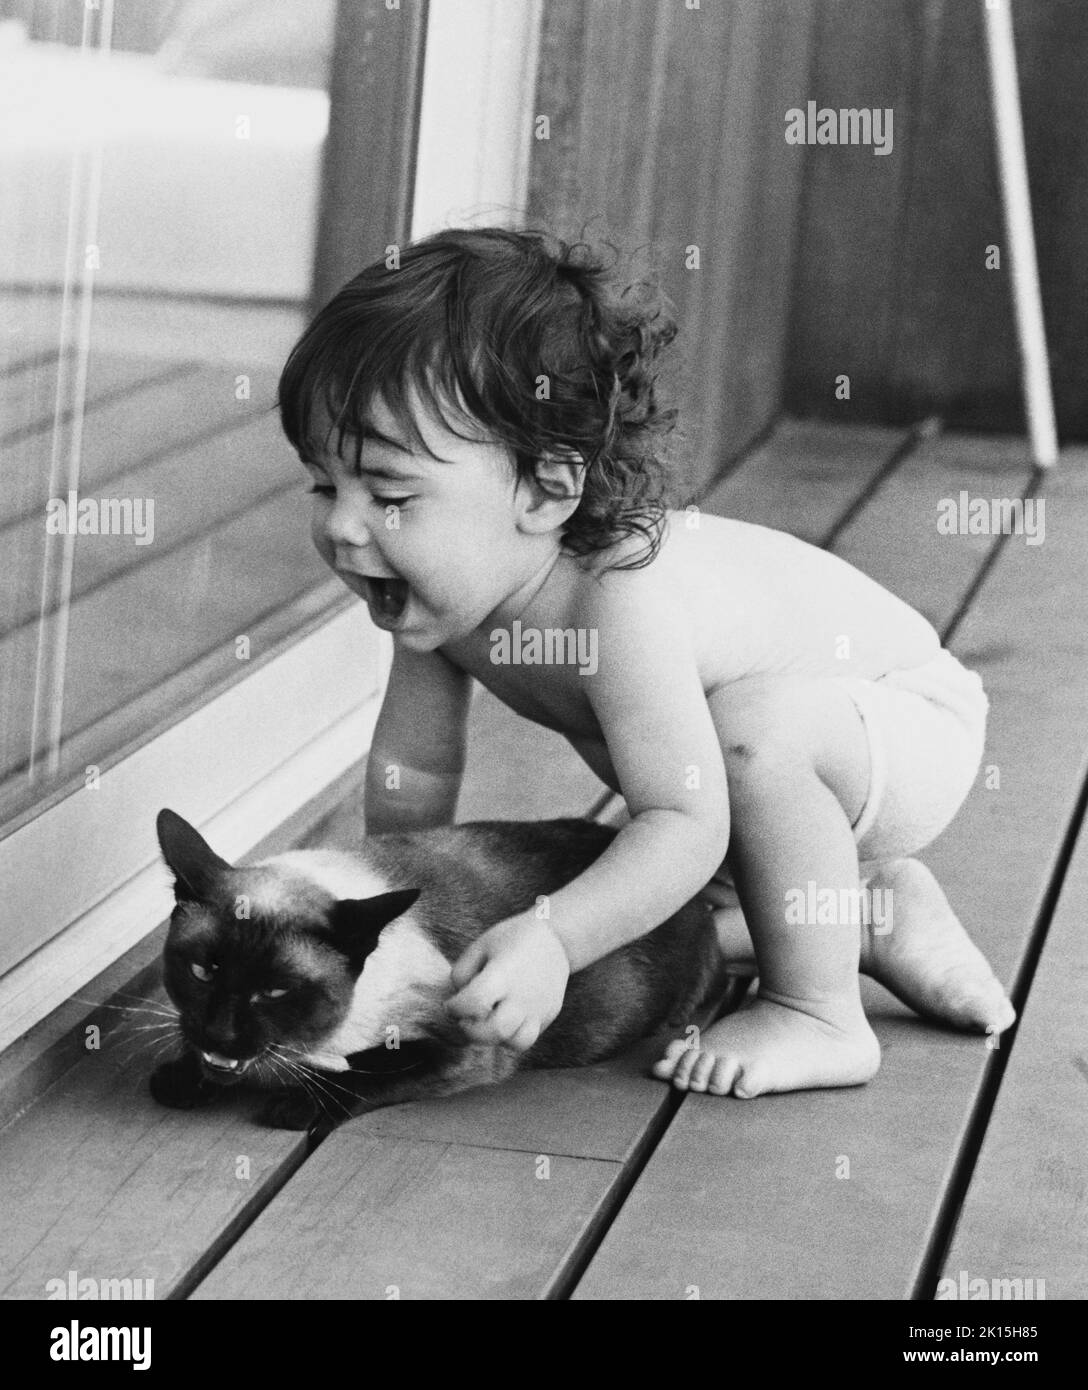 Bébé garçon se prépare à attaquer son chat. Banque D'Images